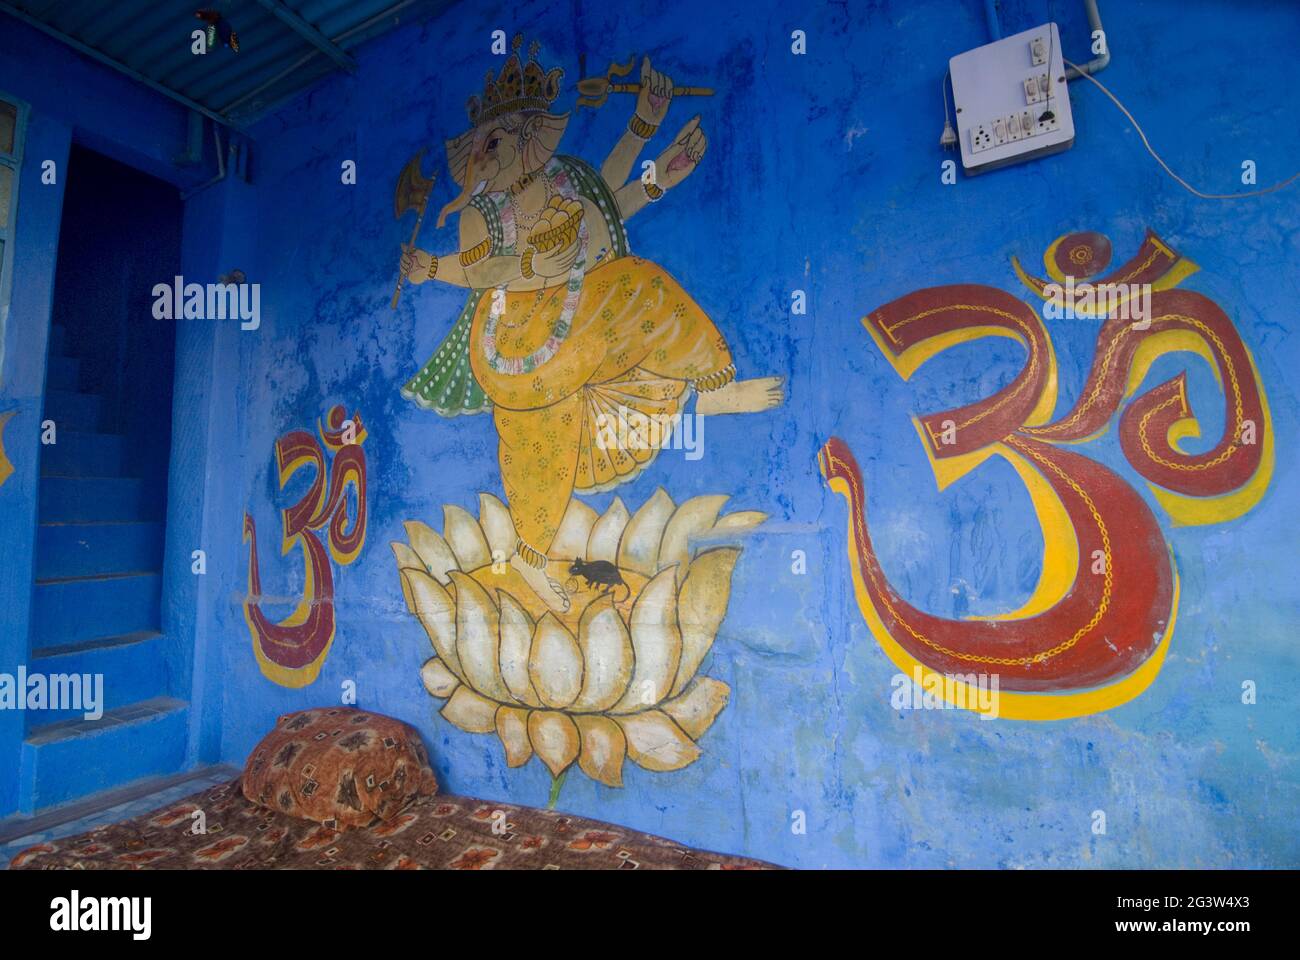 Religiöse Motive, darunter ein Tanzender Ganesh und das Om-Zeichen an der blauen Wand eines Hauses in der blauen Stadt Jodhpur, Rajasthan, Indien Stockfoto